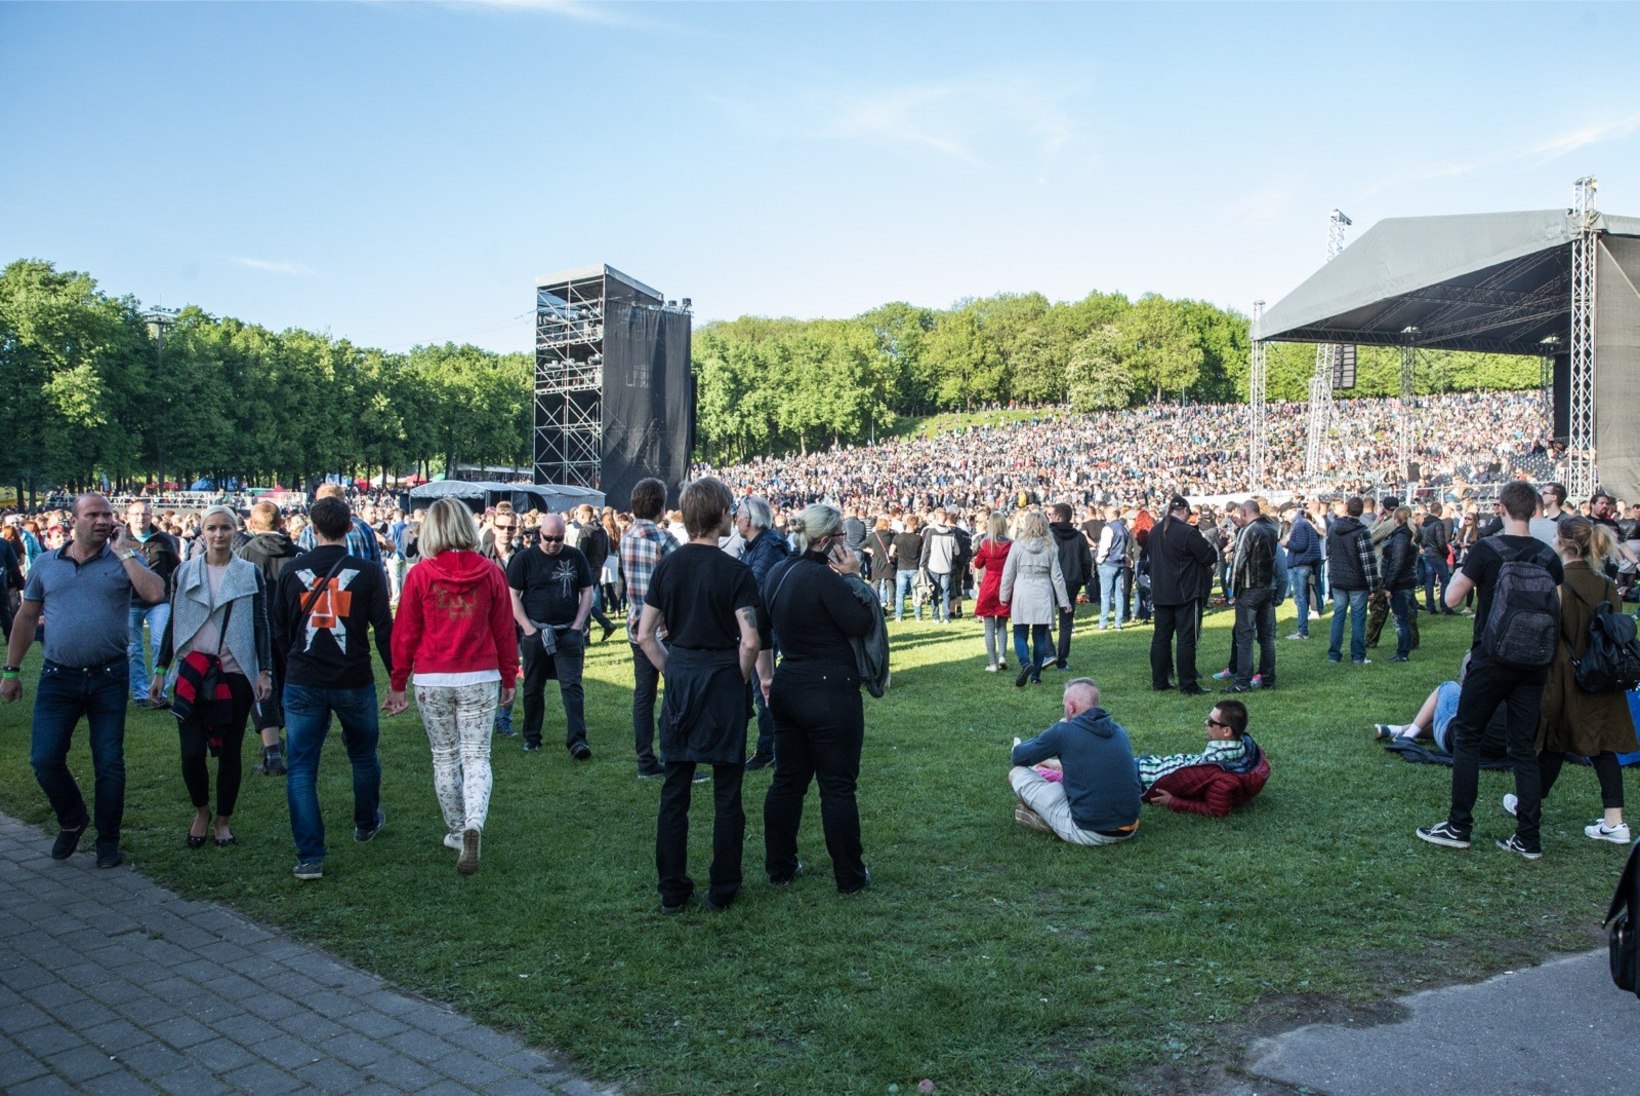 ÕHTULEHE VIDEO | Vaata, kuidas rahvas Rammsteini kontserdilt minema voolas